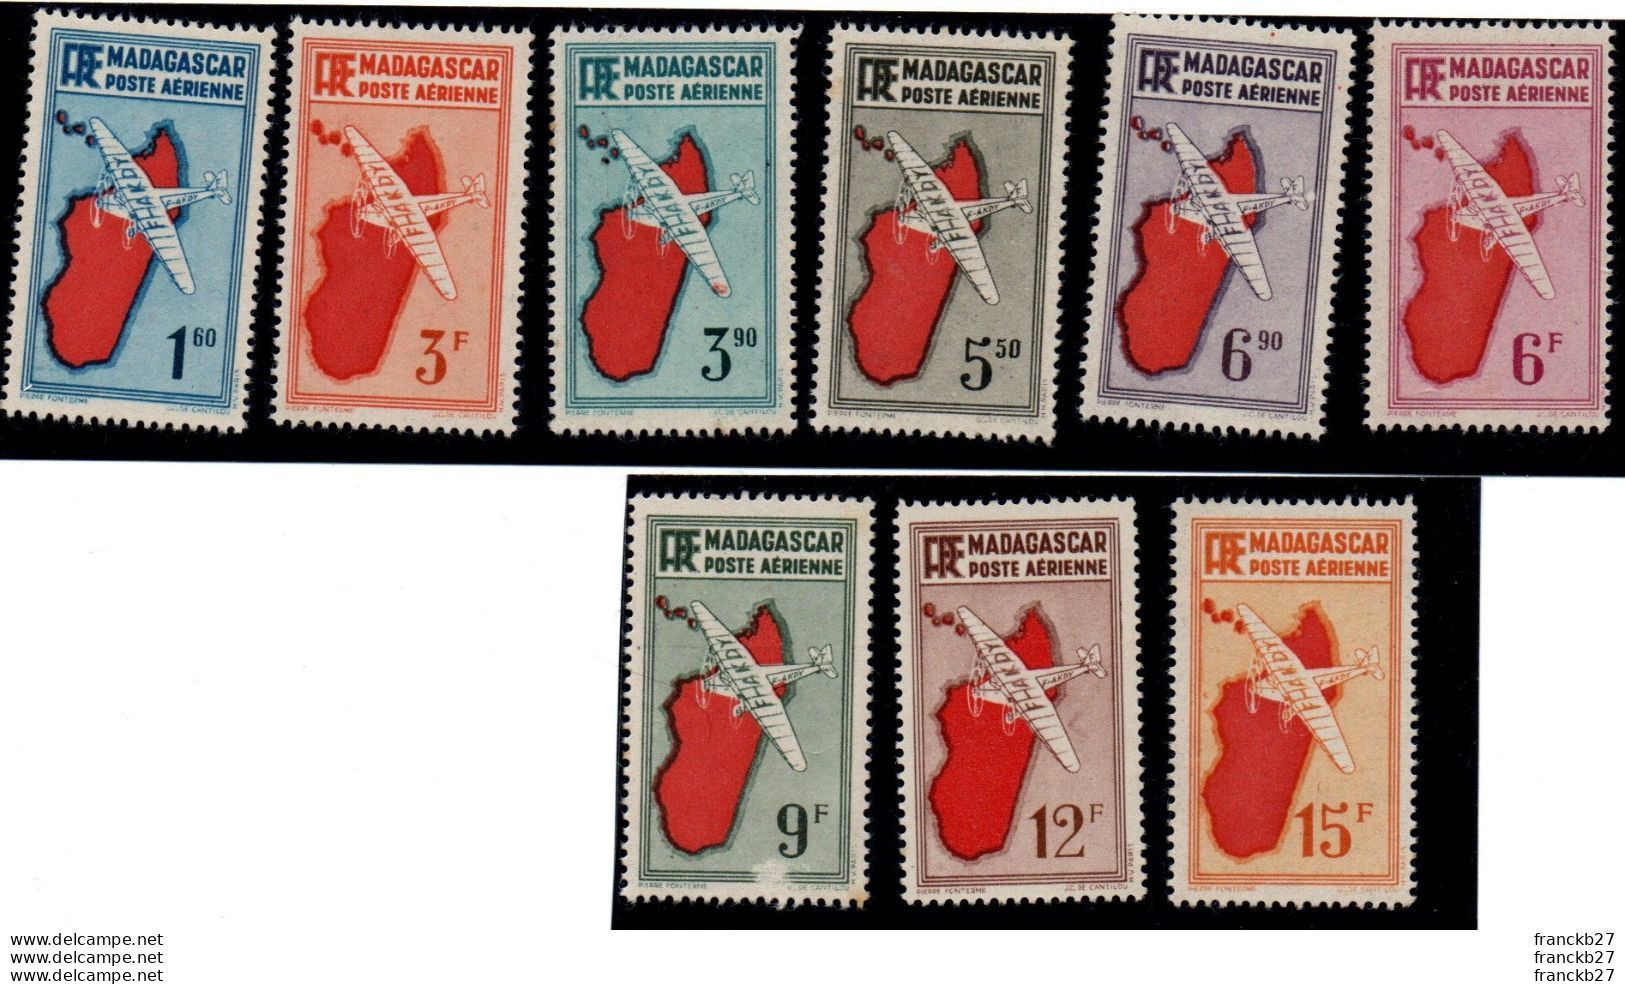 Madagascar - Poste Aérienne - 9 Timbres - 1.6 - 3 3.9 - 5.5 - 6.9 - 6 - 9 - 12 - 15 F - Nuovi